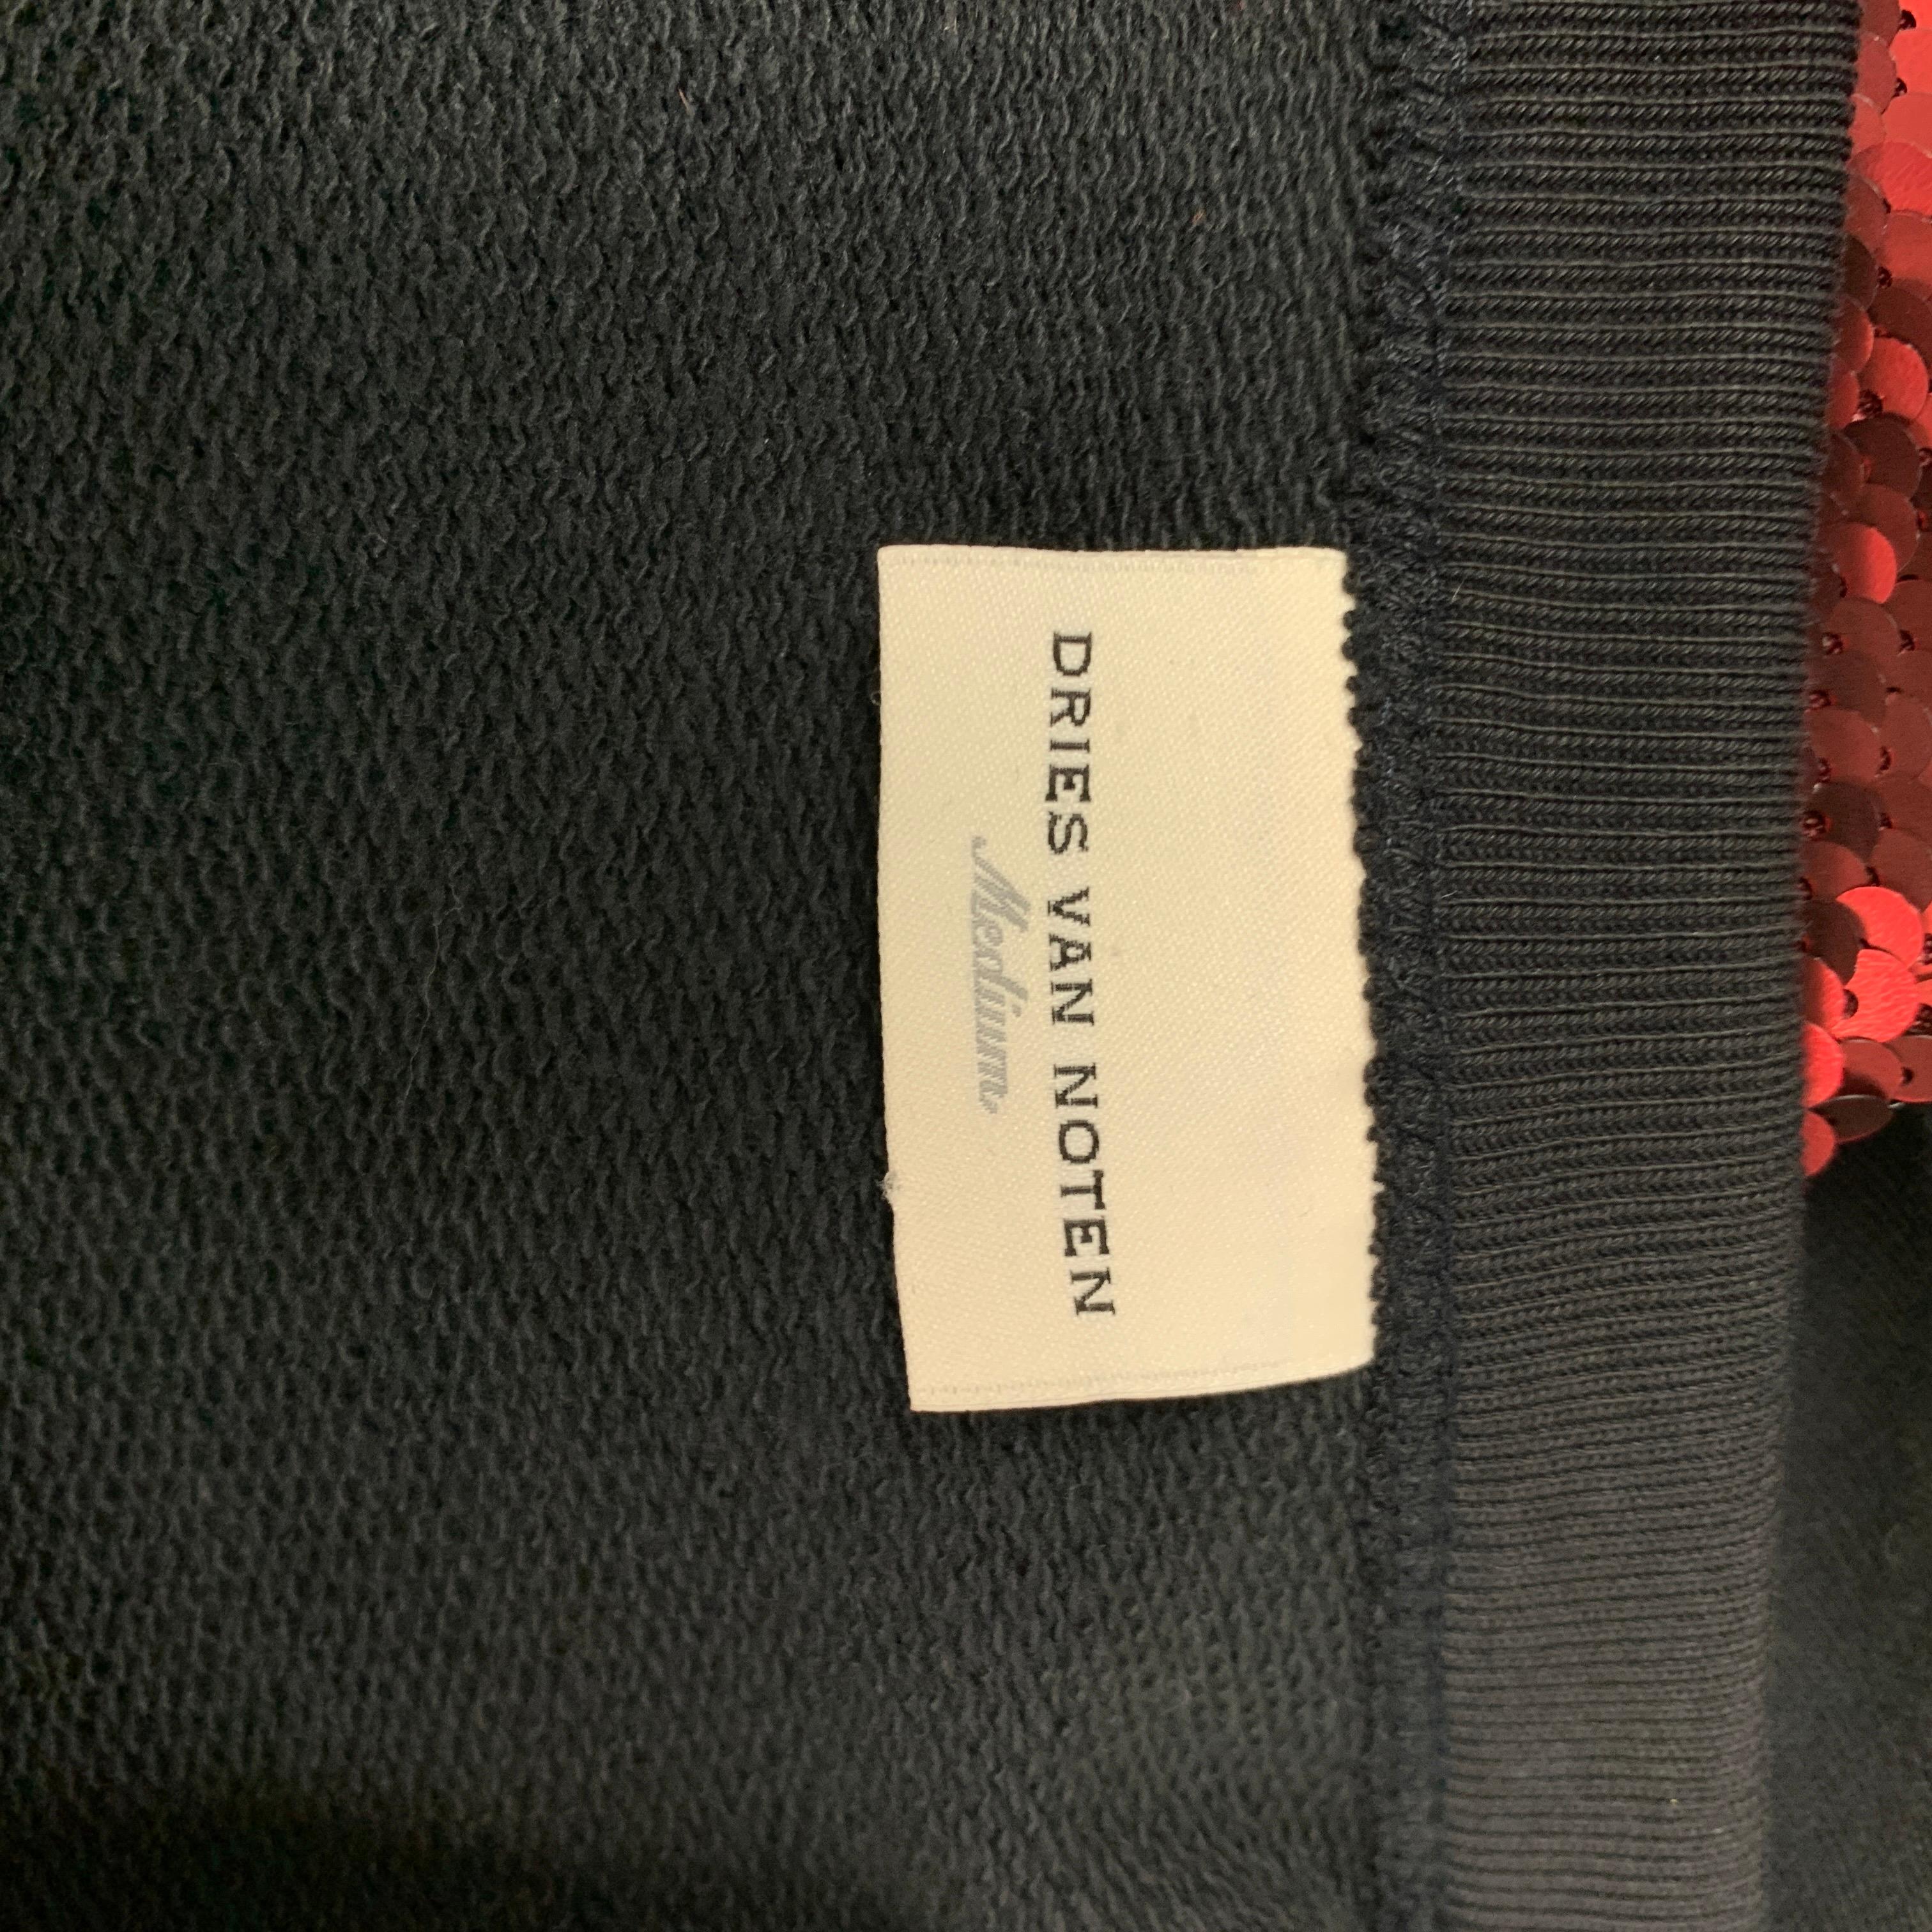 Men's DRIES VAN NOTEN S/S 16 Size M Red & Black Sequined Cotton / Polyester Vest